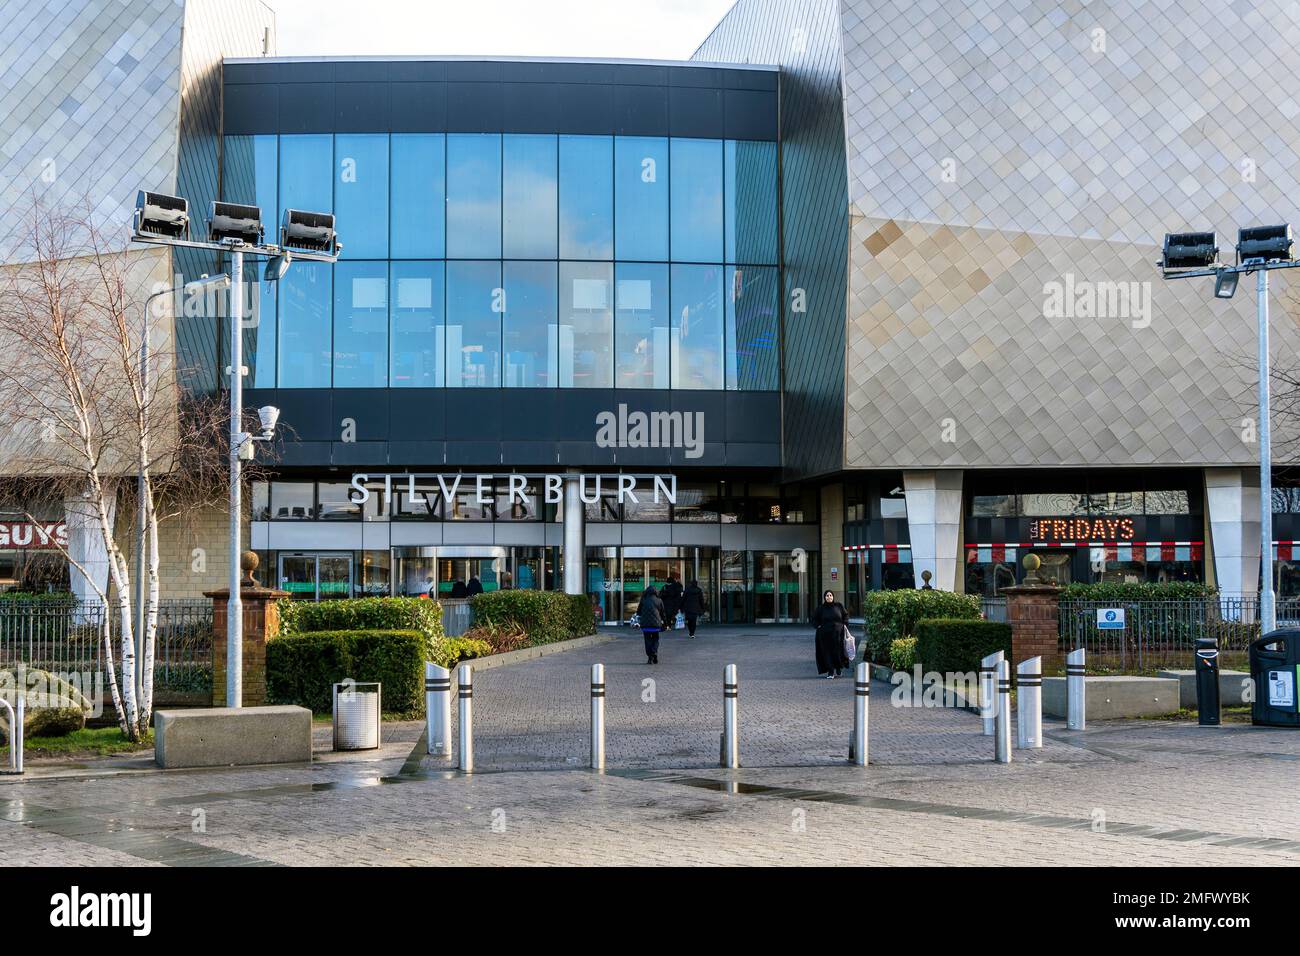 Entrée au centre commercial Silverburn, Pollok, Glasgow, Écosse, Royaume-Uni Banque D'Images